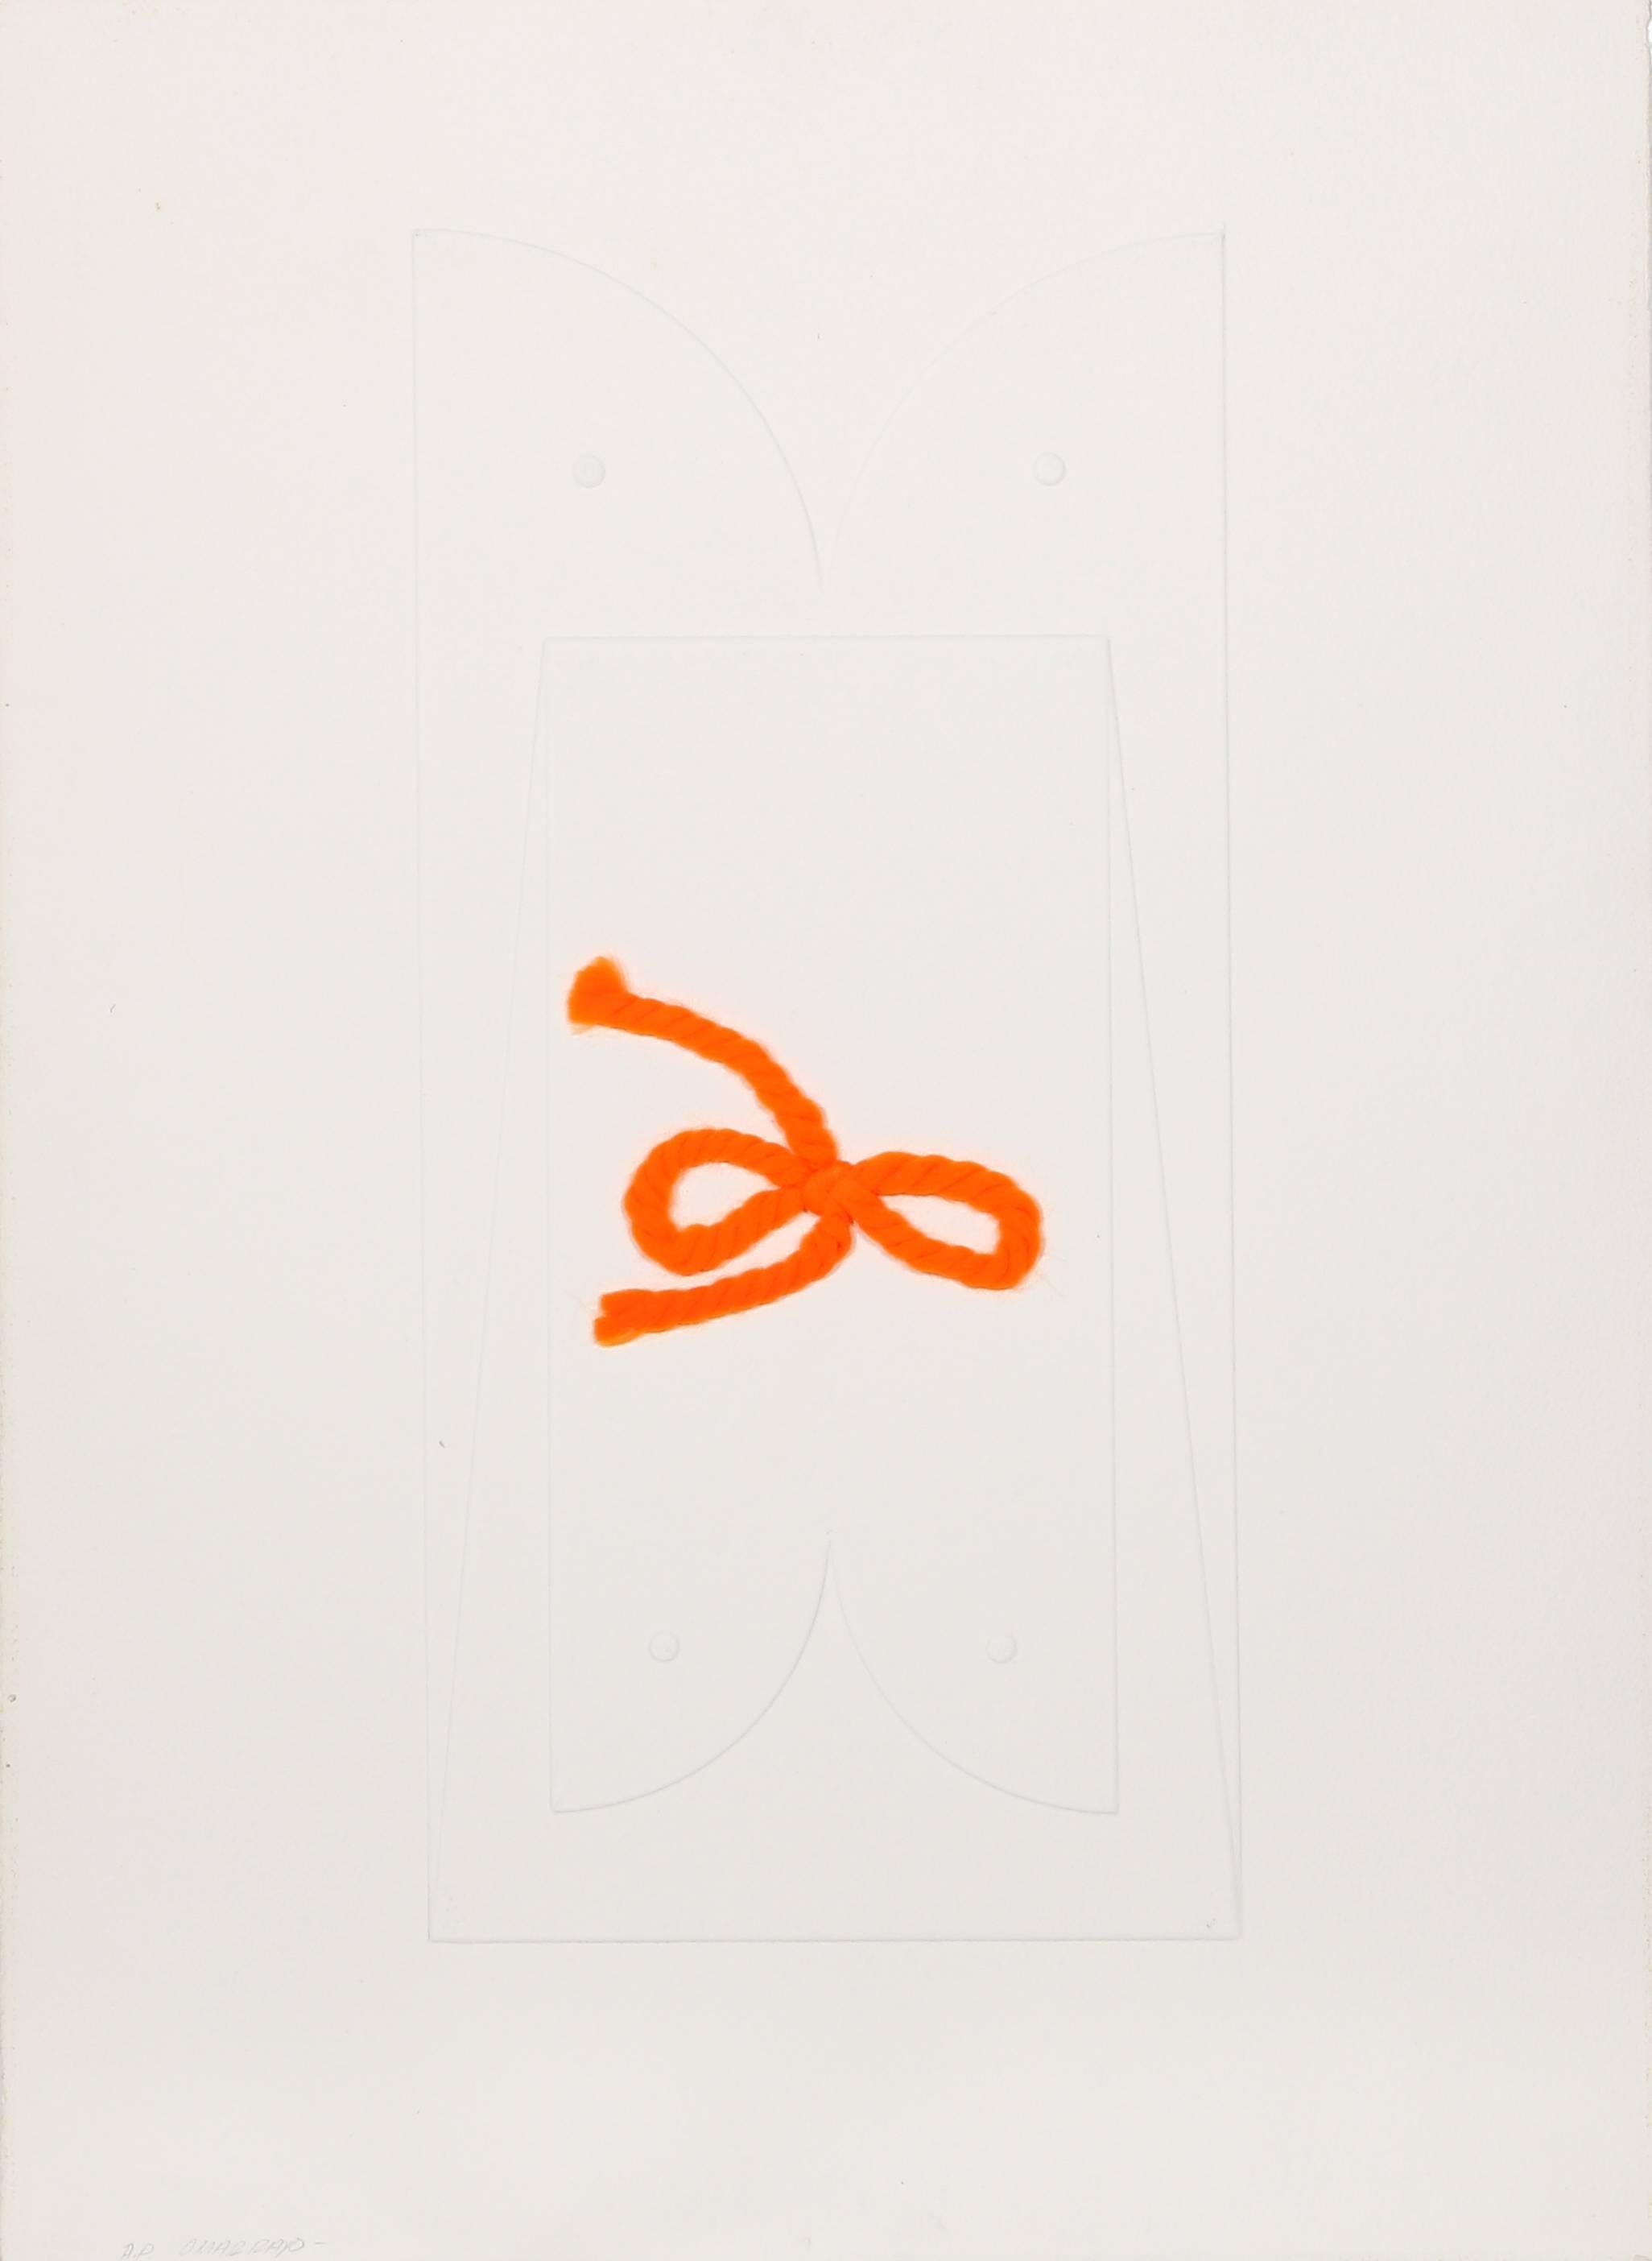 Künstler: Omar Rayo, Kolumbianer (1928 - )
Titel: Unbetitelt I 
Jahr: ca. 1970
Medium: Tiefdruckradierung mit Collage auf Büttenpapier, mit Bleistift signiert
Auflage: 50, AP
Papierformat: 30 x 22,5 Zoll (76,2 x 57,2 cm)